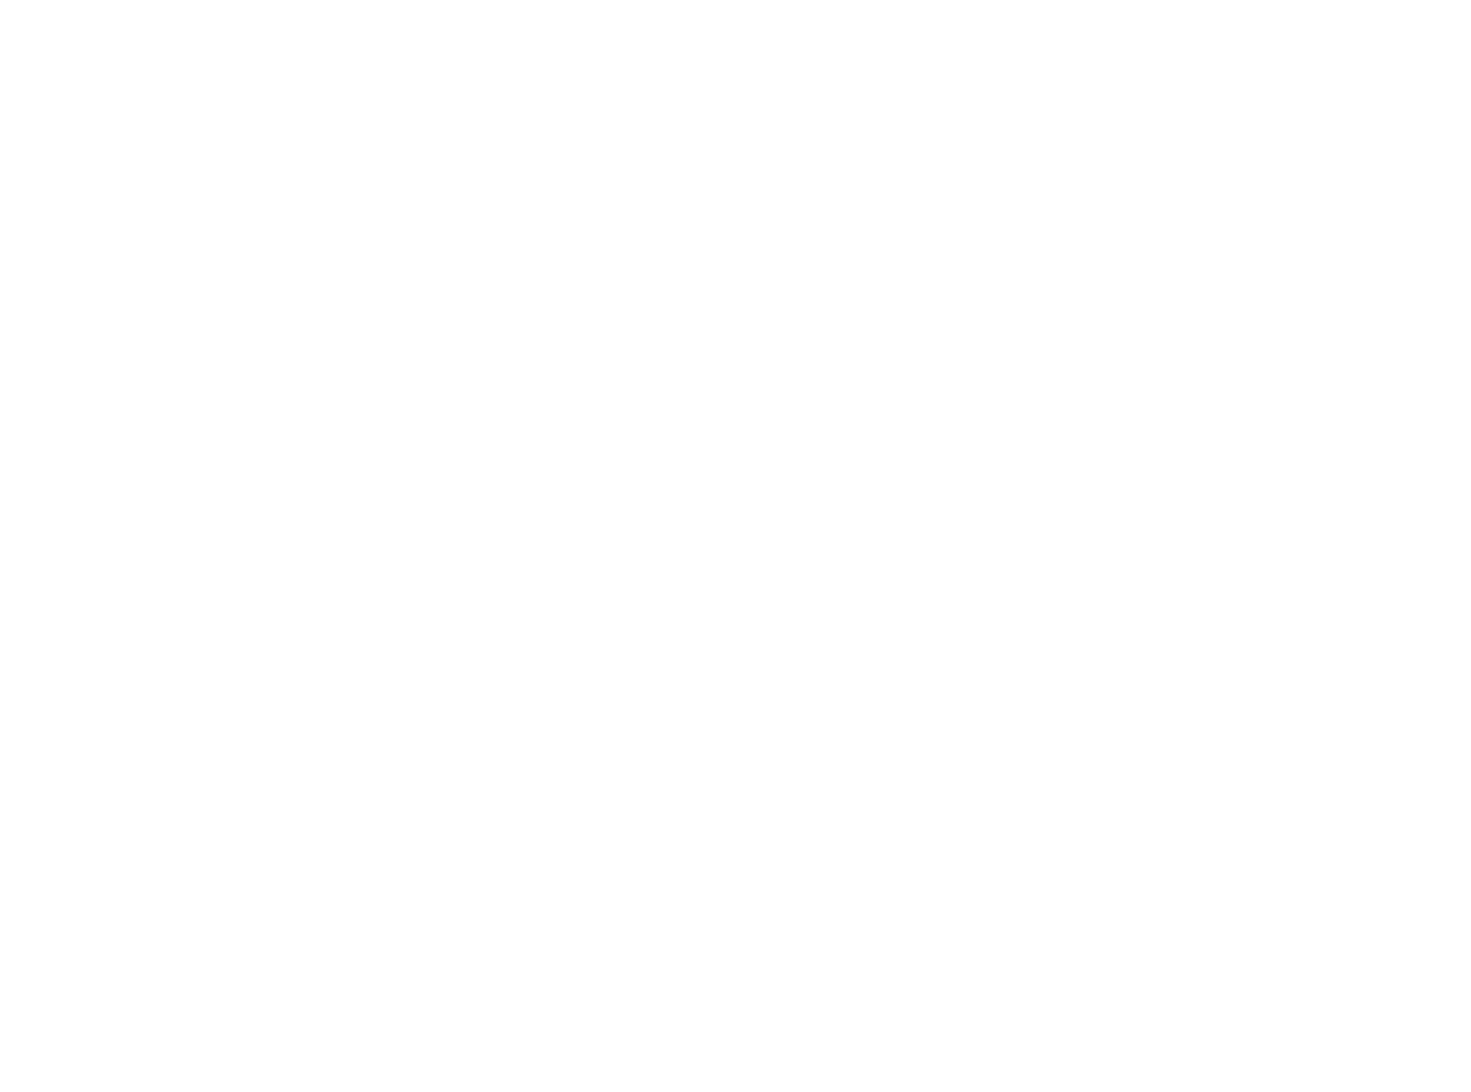 UOG Cares Logo